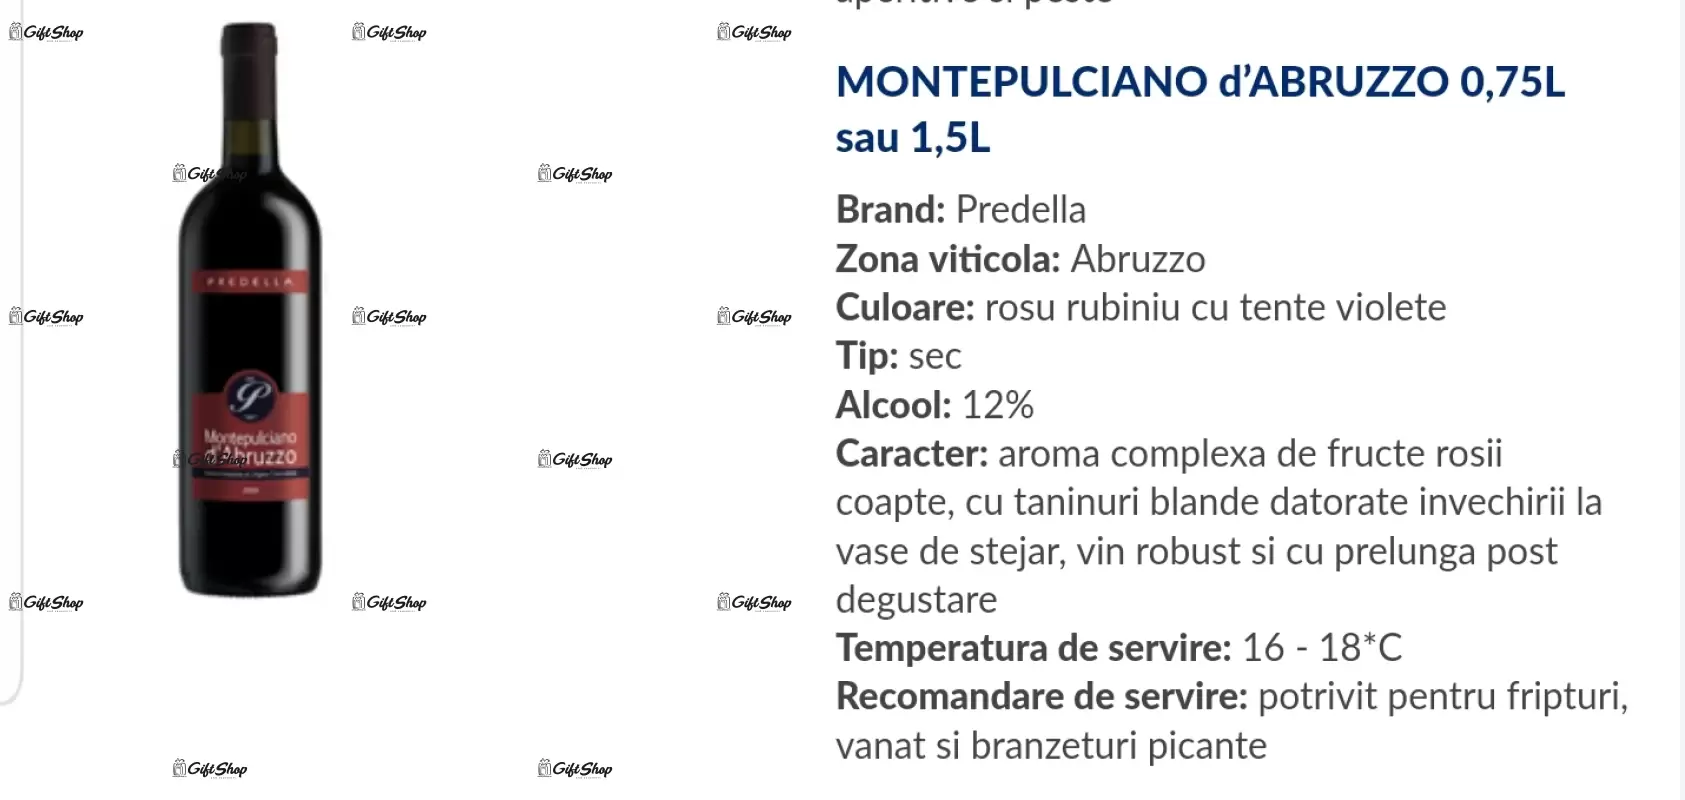 Pentru cel mai bun pompier, model 2, editie limitata, rosu predellea abruzzo, sec, 12.5% alc.